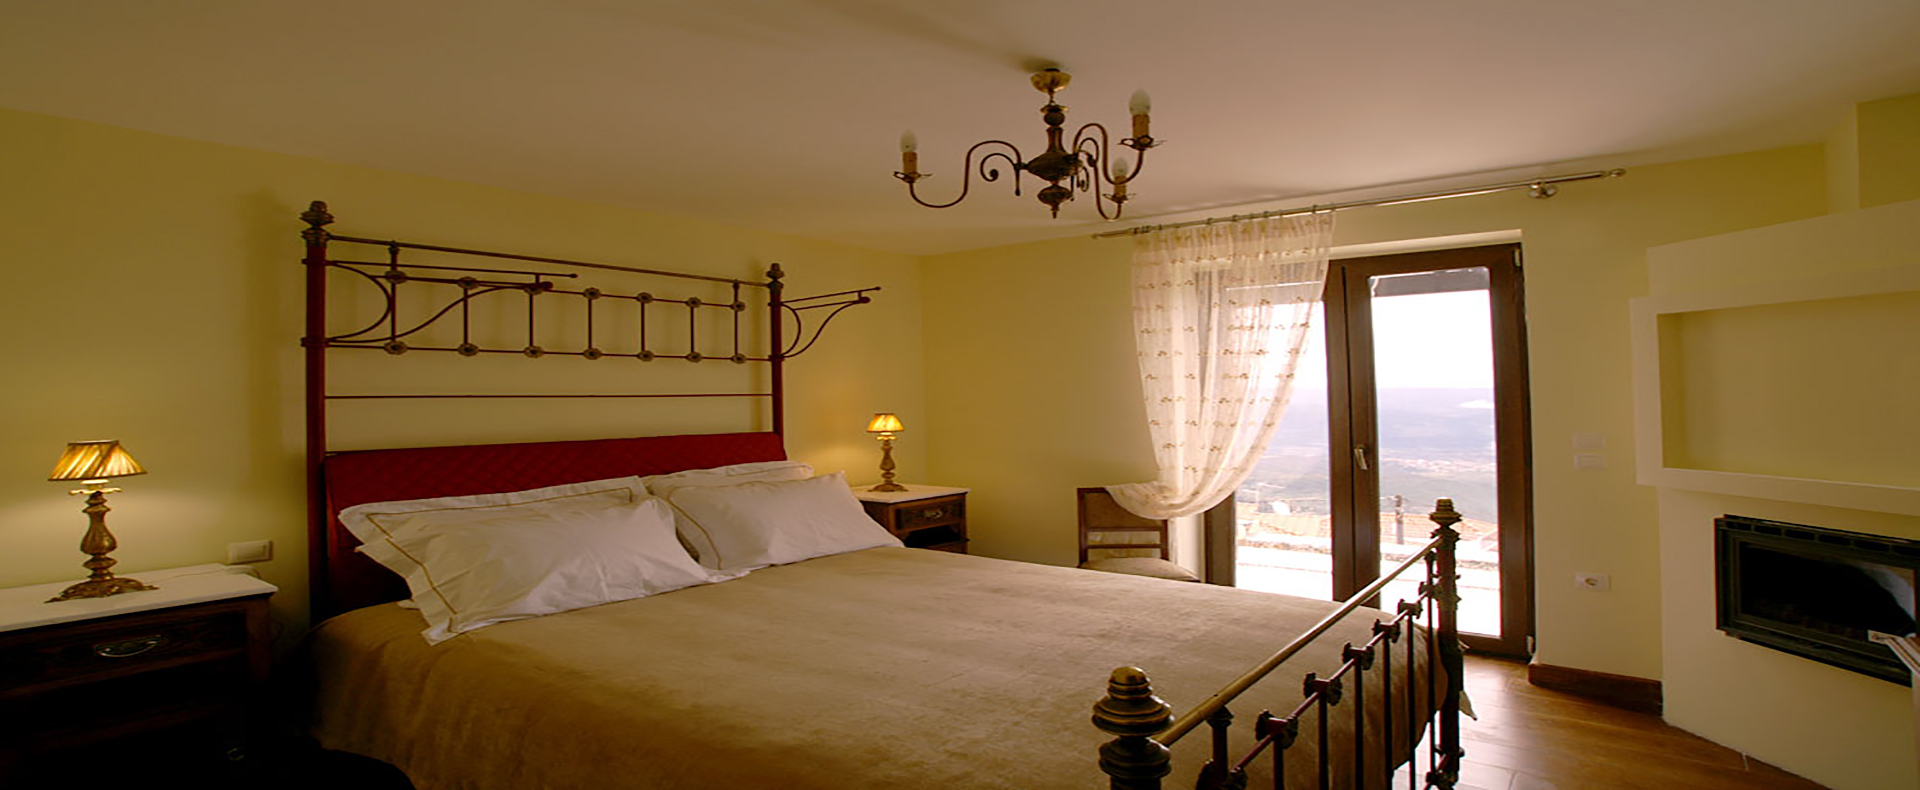 Ξενοδοχείο "Το Μπαλκόνι του Ταϋγέτου" στο Γεωργίτσι Λακωνίας